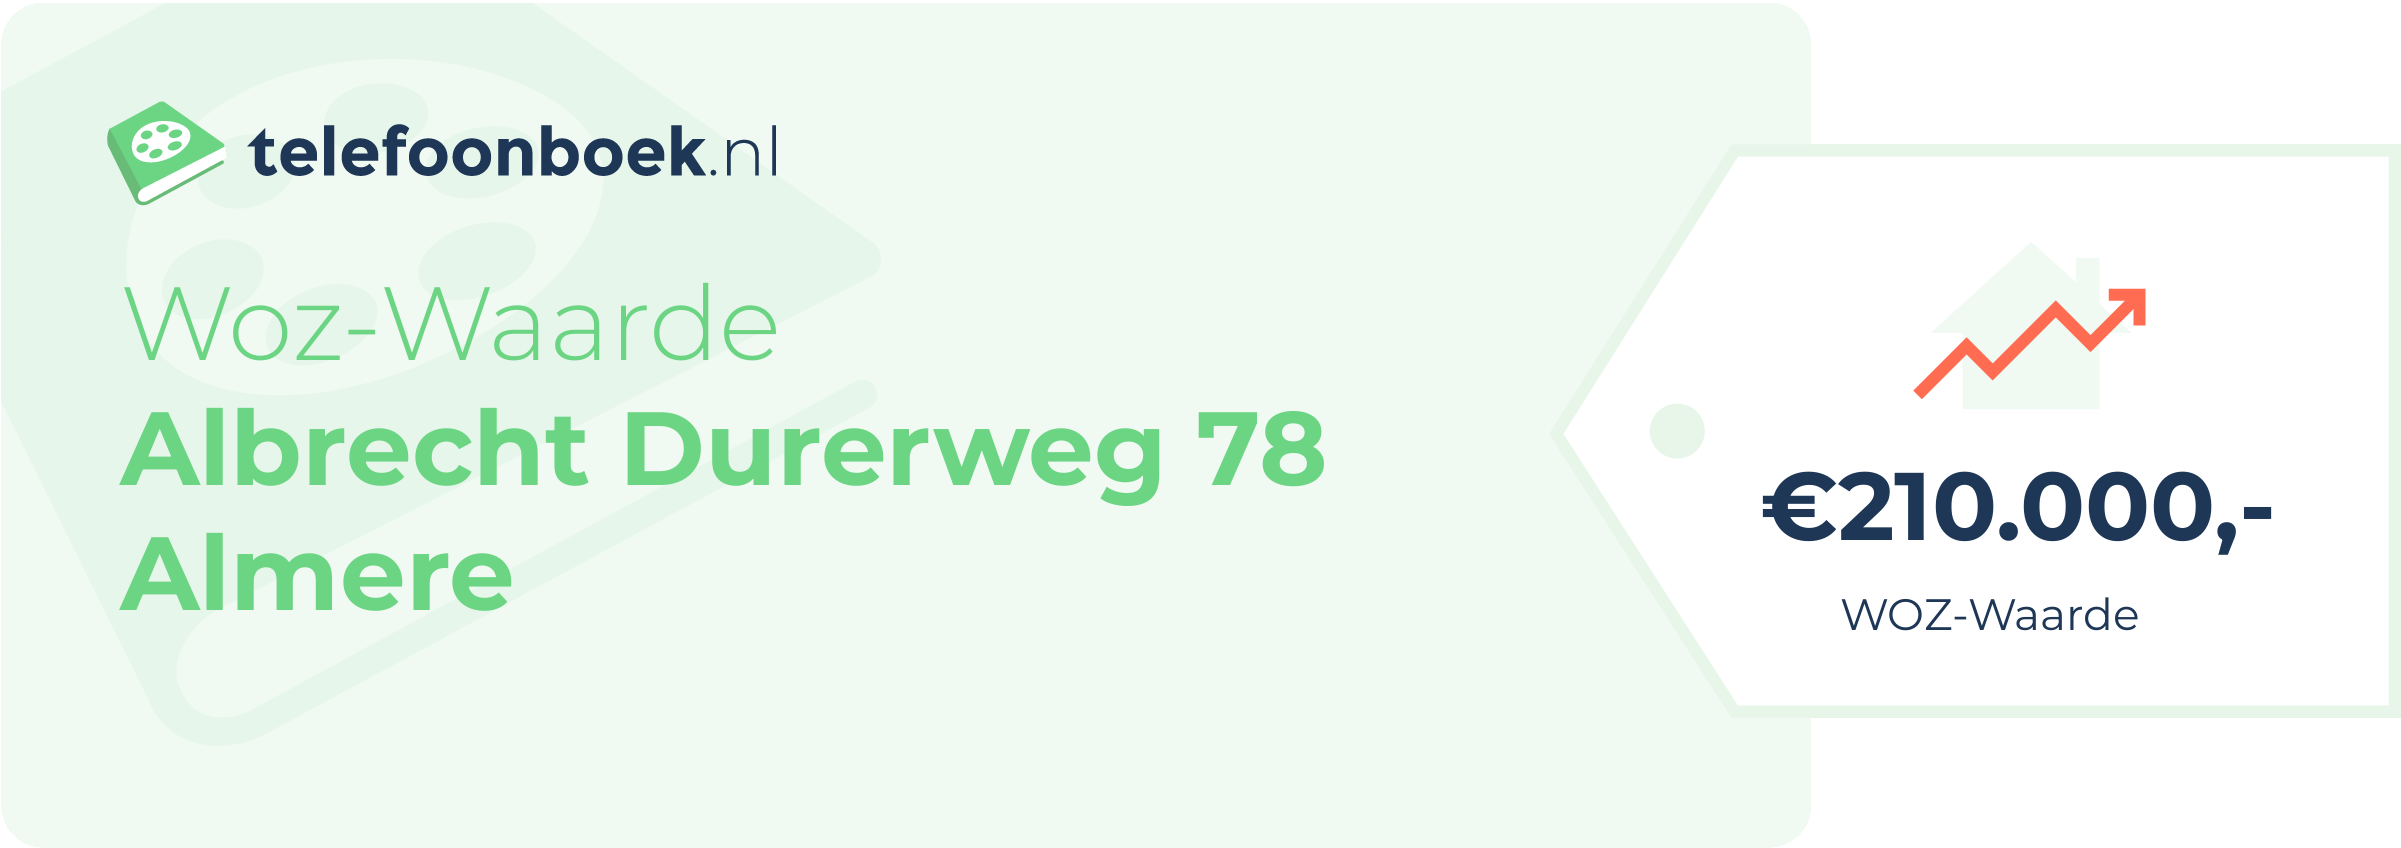 WOZ-waarde Albrecht Durerweg 78 Almere